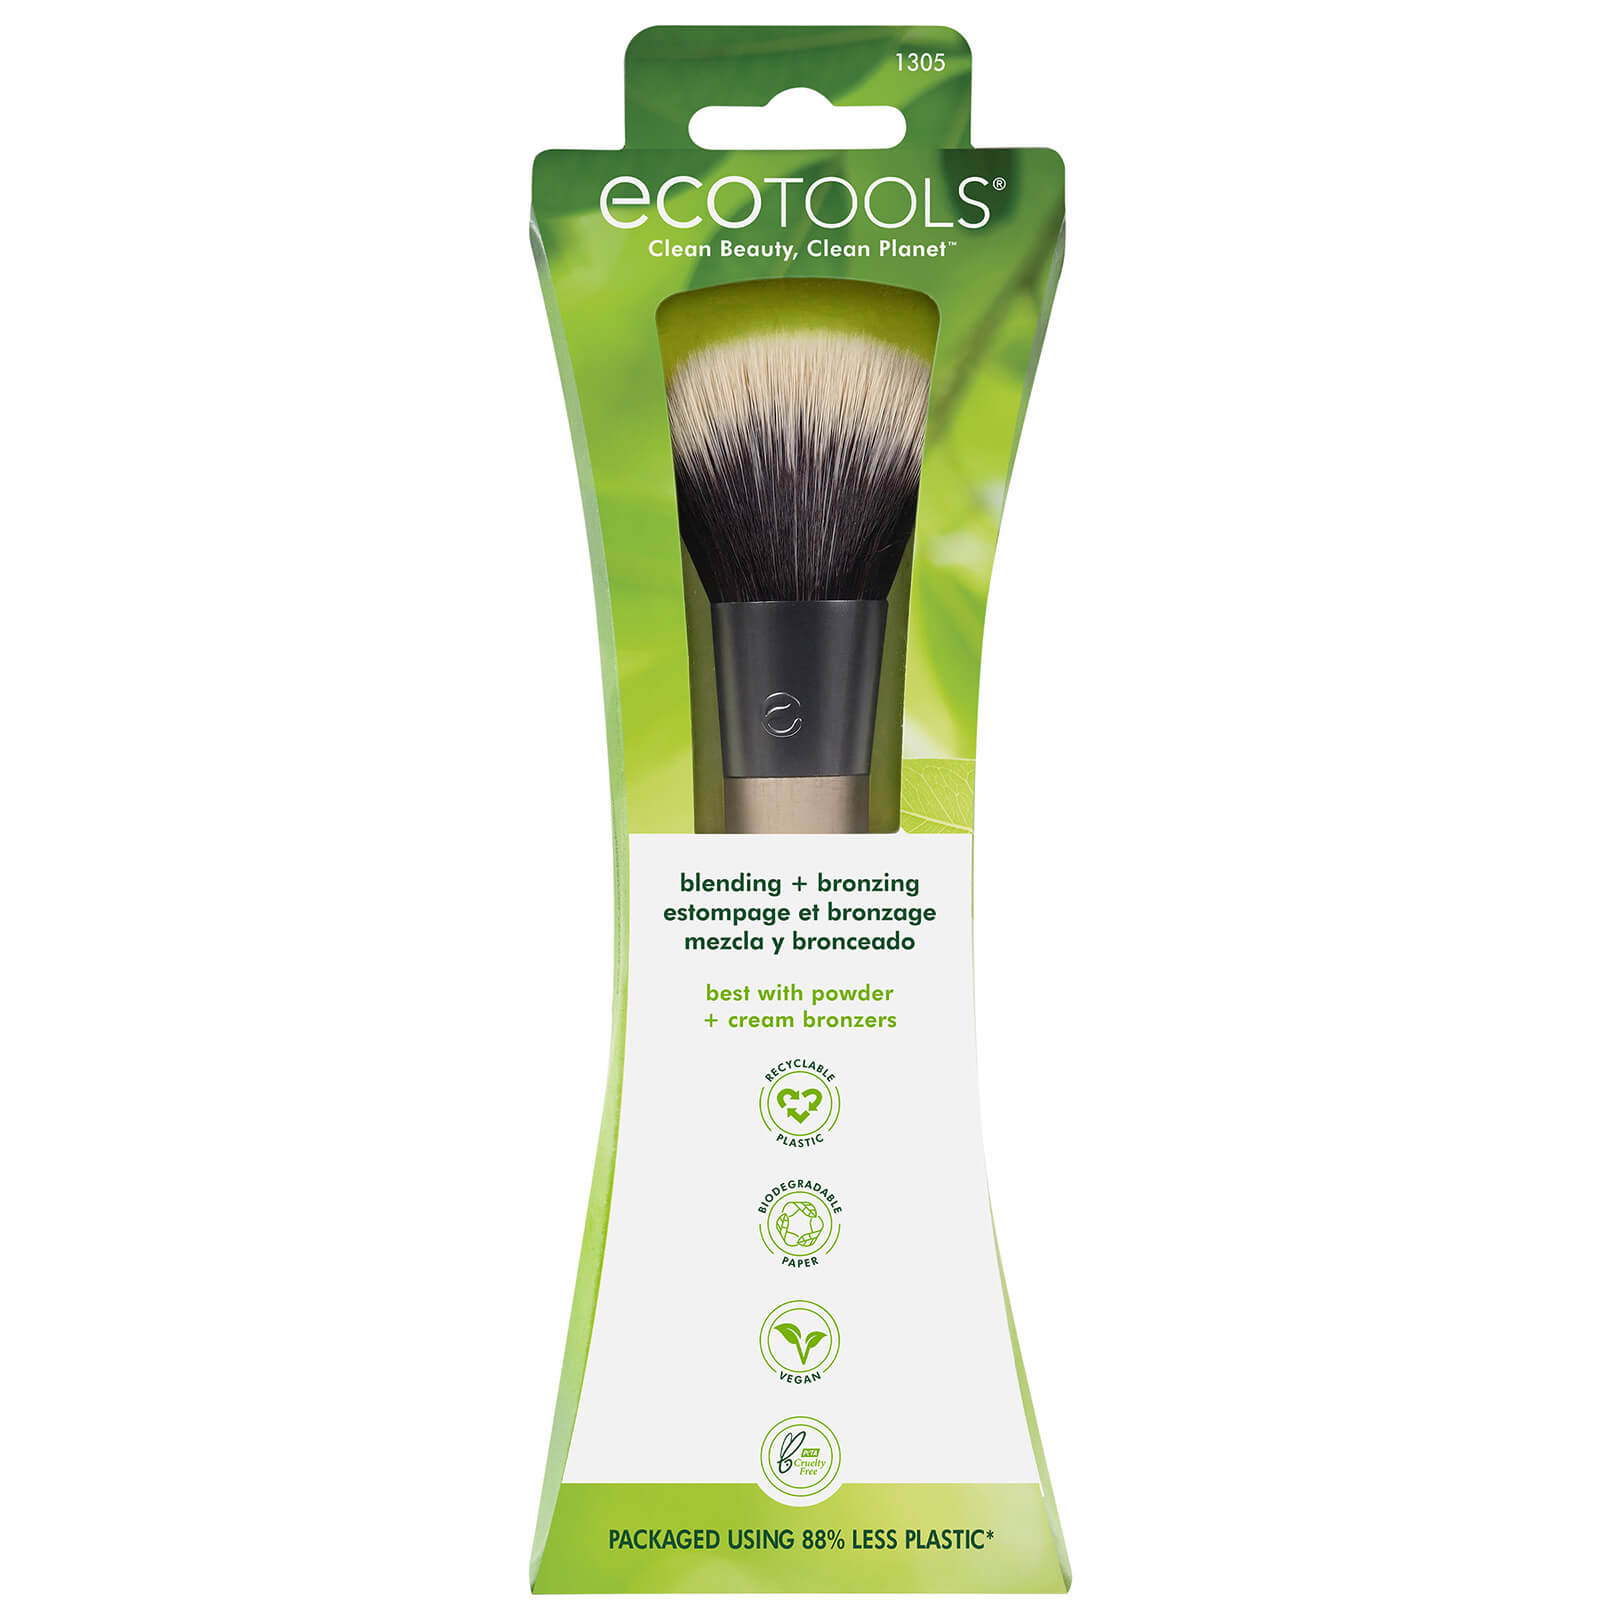 EcoTools Blending and Bronzing Makeup Brush